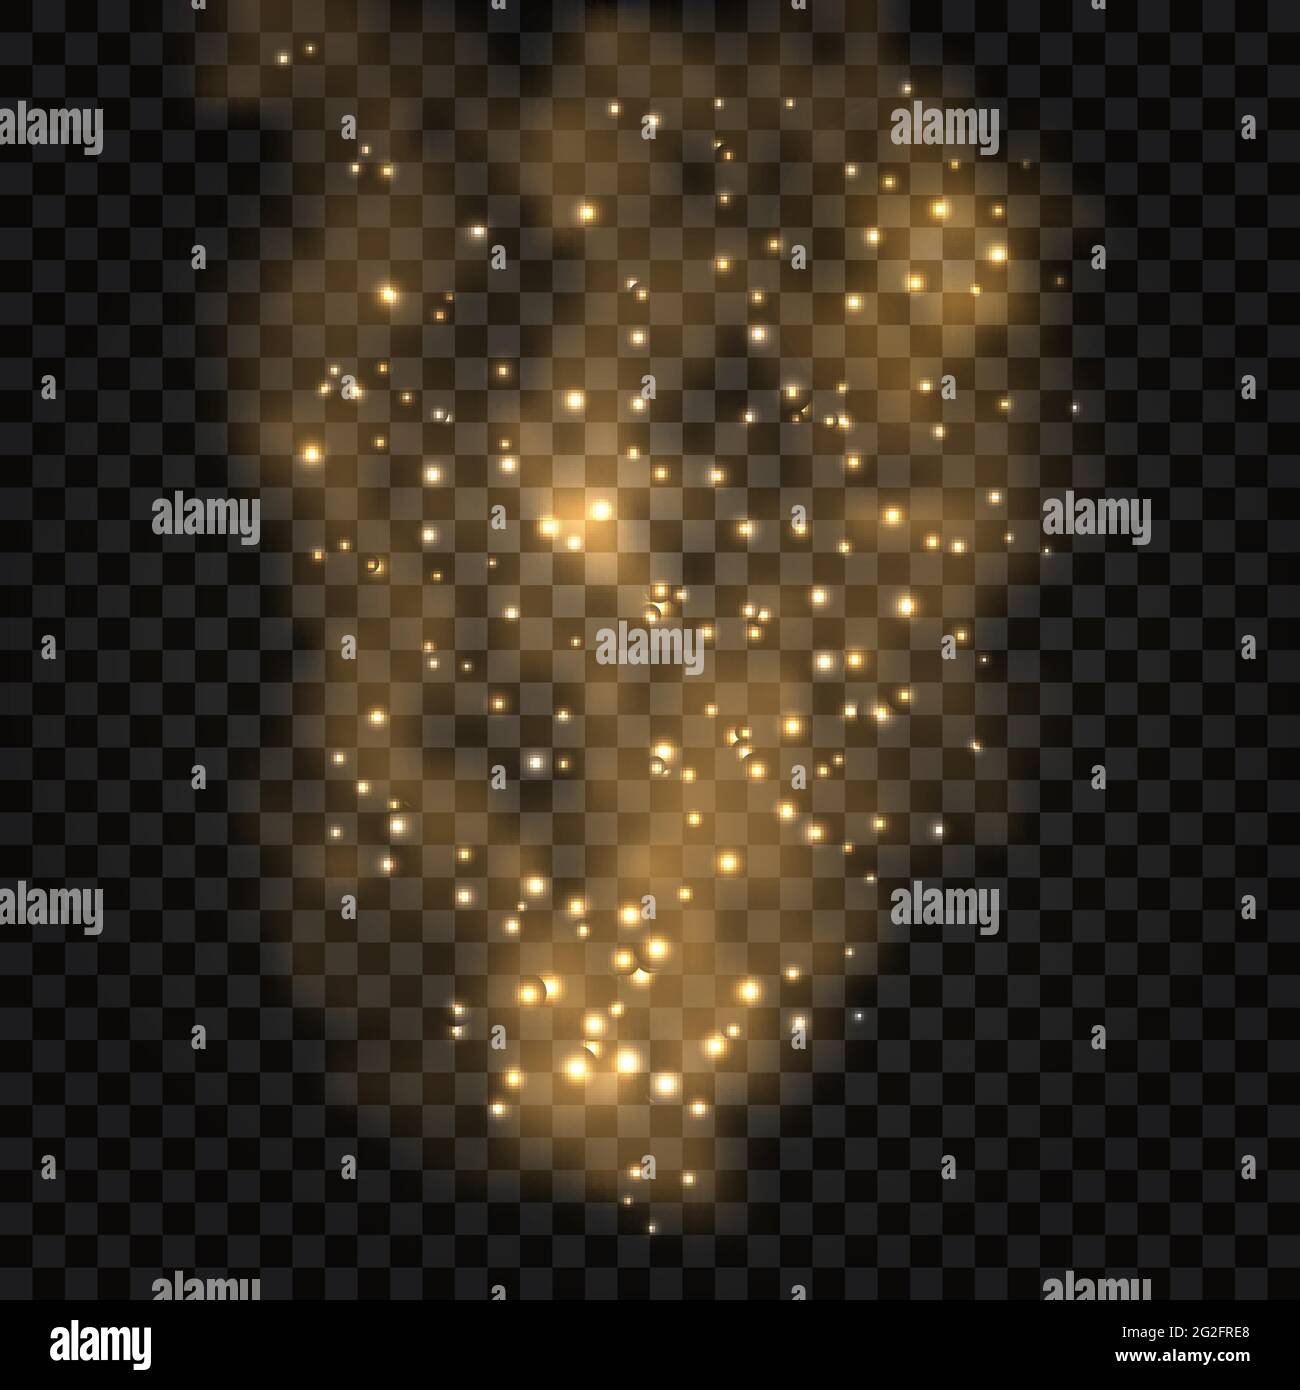 Abstrakter fraktaler Goldrauch mit hellem Leuchteffekt, glänzenden Partikeln, Sternschimmer. Goldenes foq auf dunklem transparenten Hintergrund. Vektorgrafik. Stock Vektor